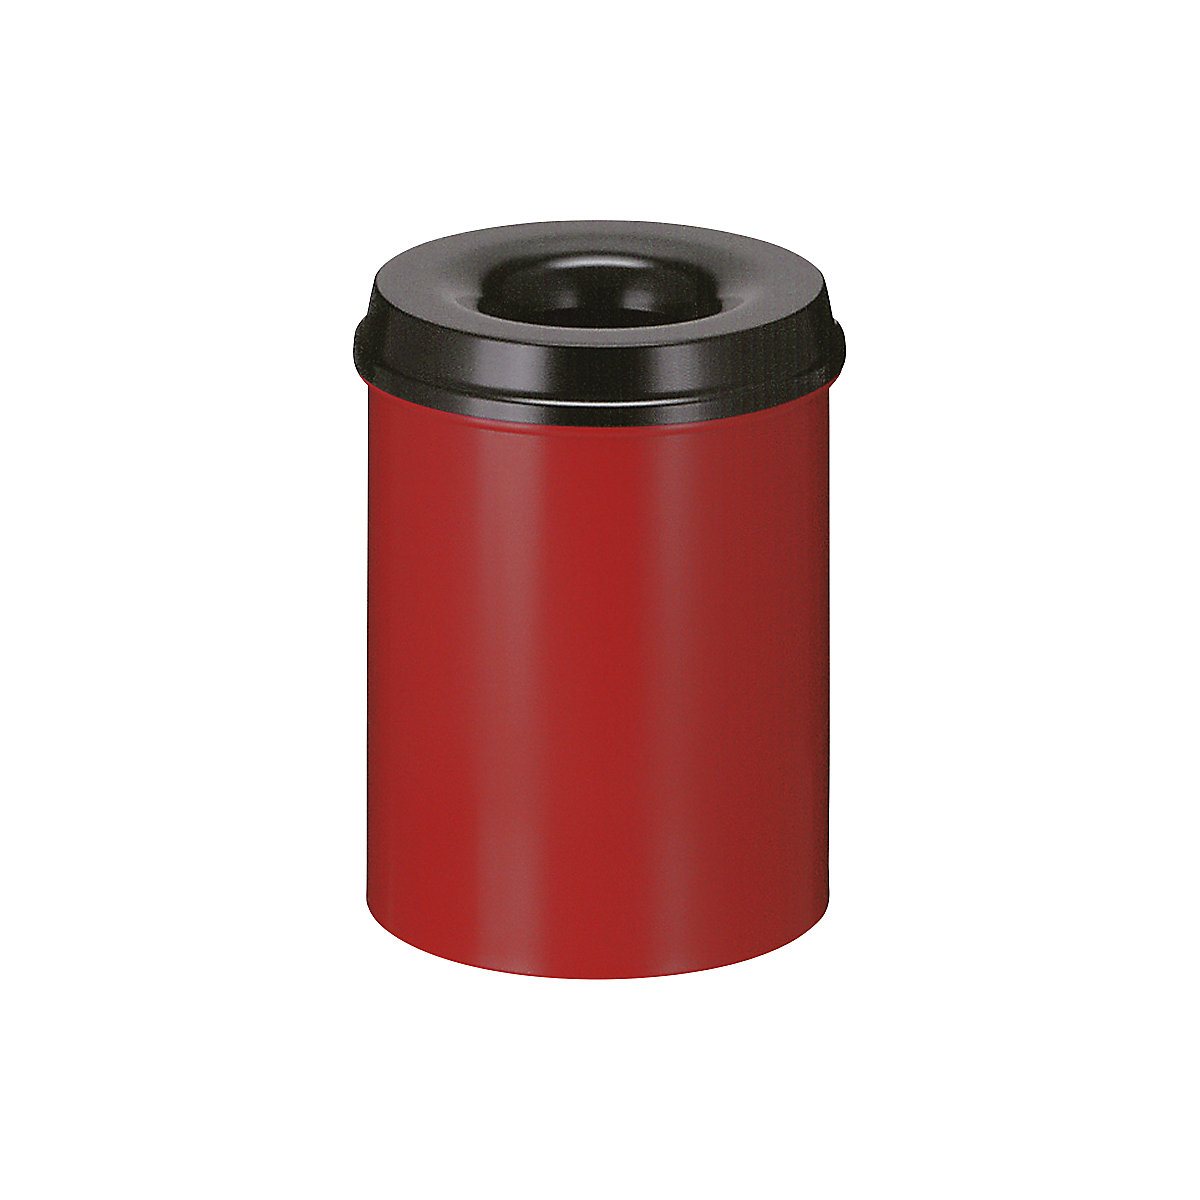 Sigurnosna kanta za papir, čelik, samogasiva, volumen 15 l, VxØ 360 x 255 mm, korpus u crvenoj boji / vrh za gašenje u crnoj boji-8